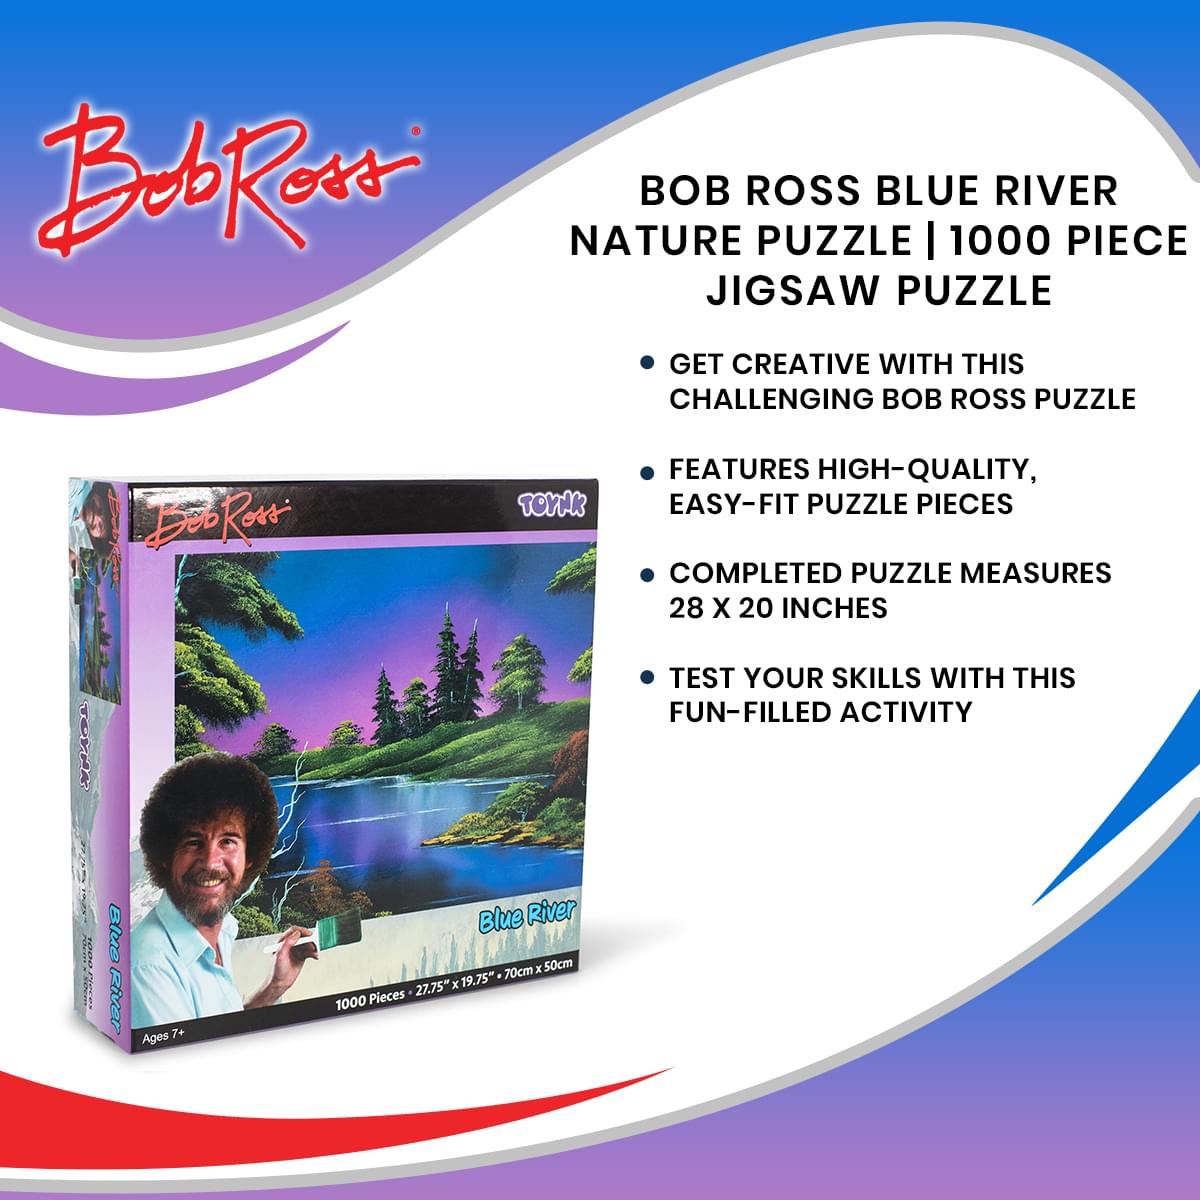 Bob Ross Blue River Nature Puzzle | 1000 Piece Jigsaw Puzzle